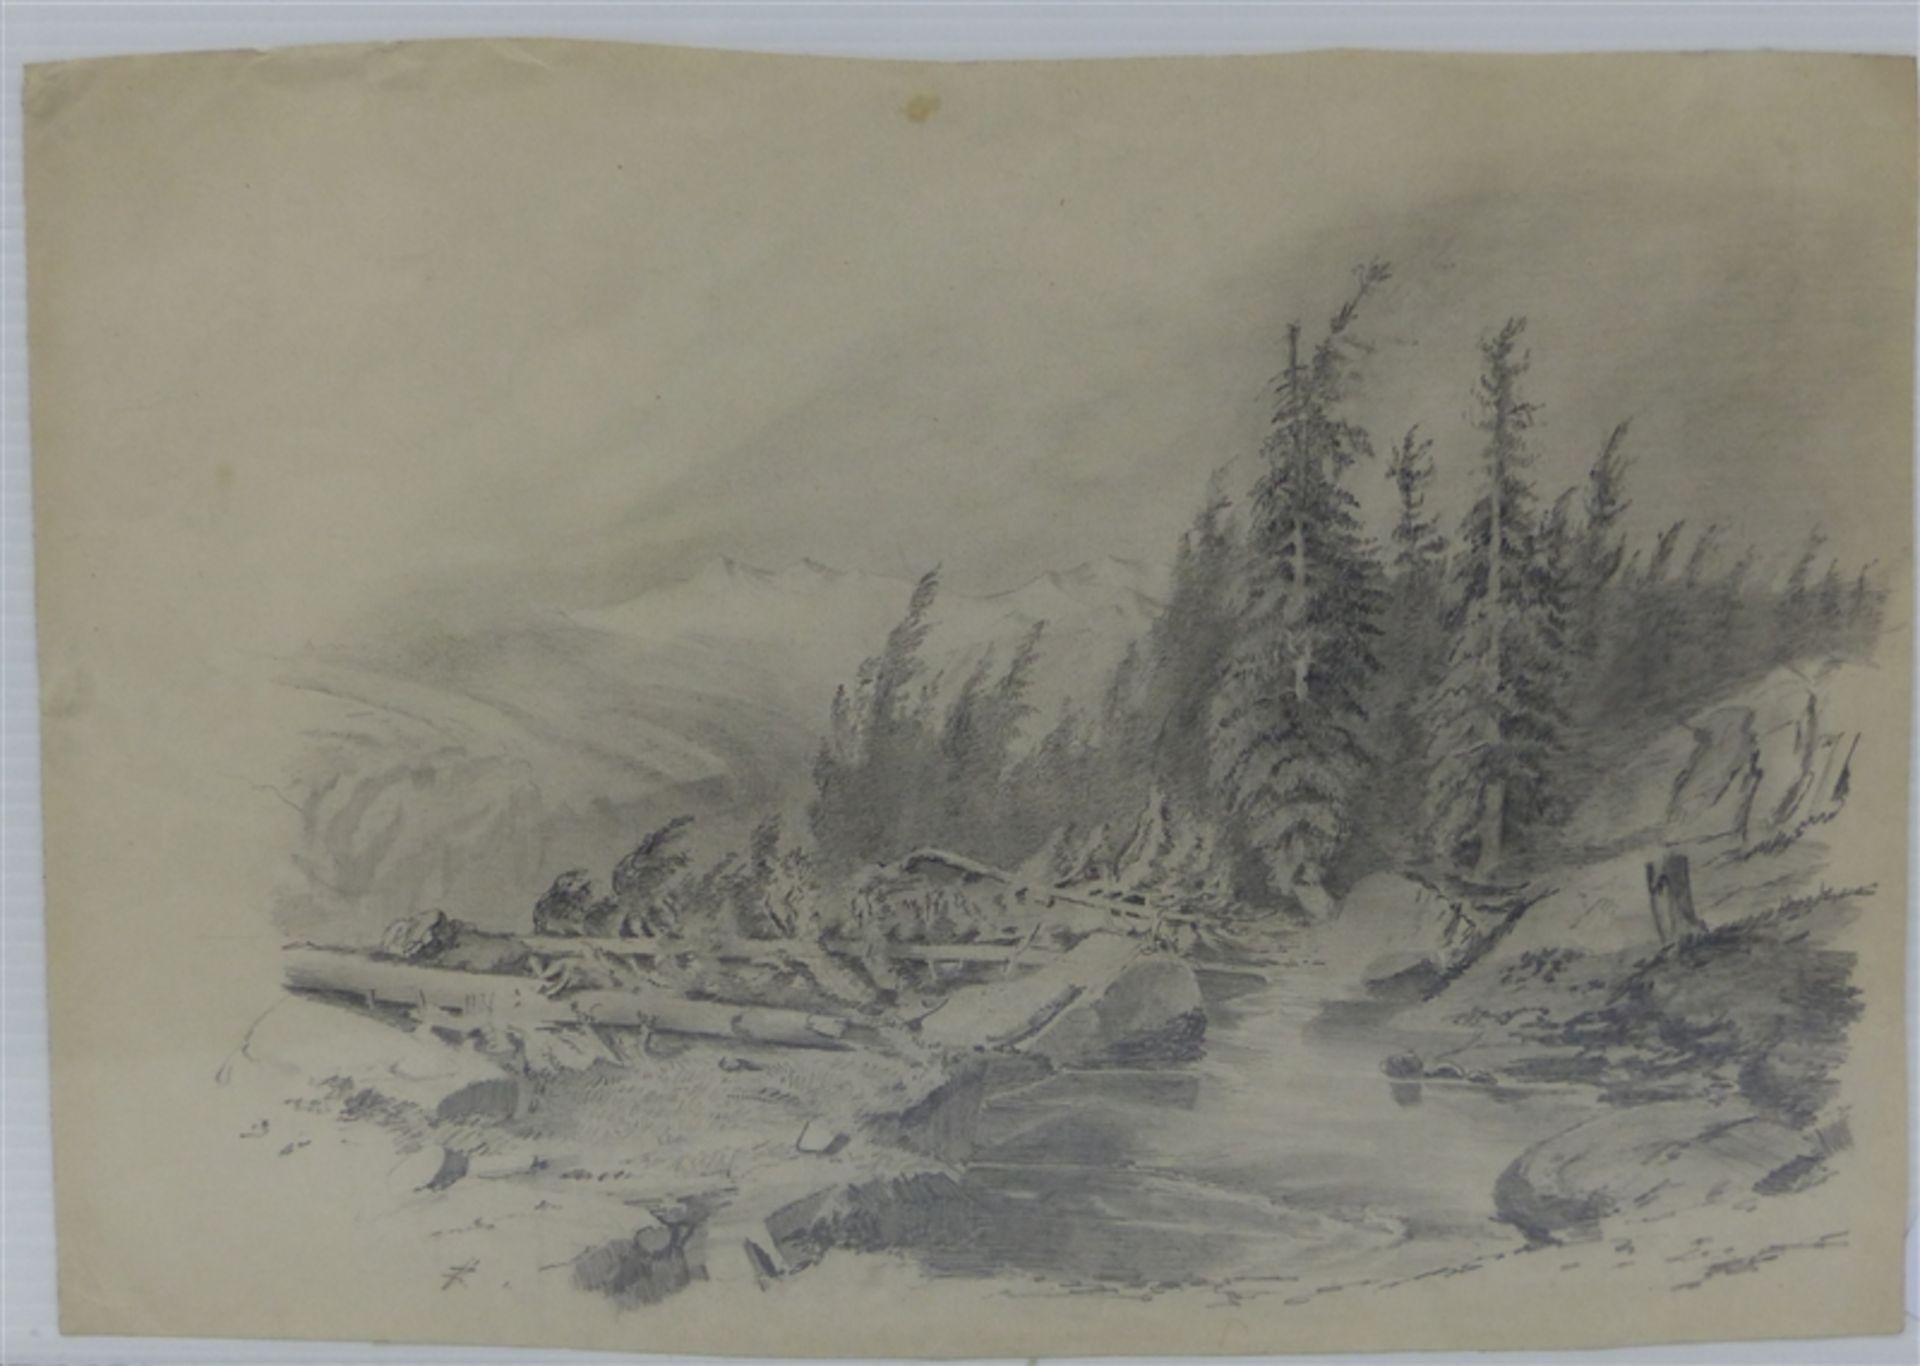 Kalckreuth, Eduard Stanislaus Graf von zugeschrieben, 1820-1894, "Bergige Landschaft mit